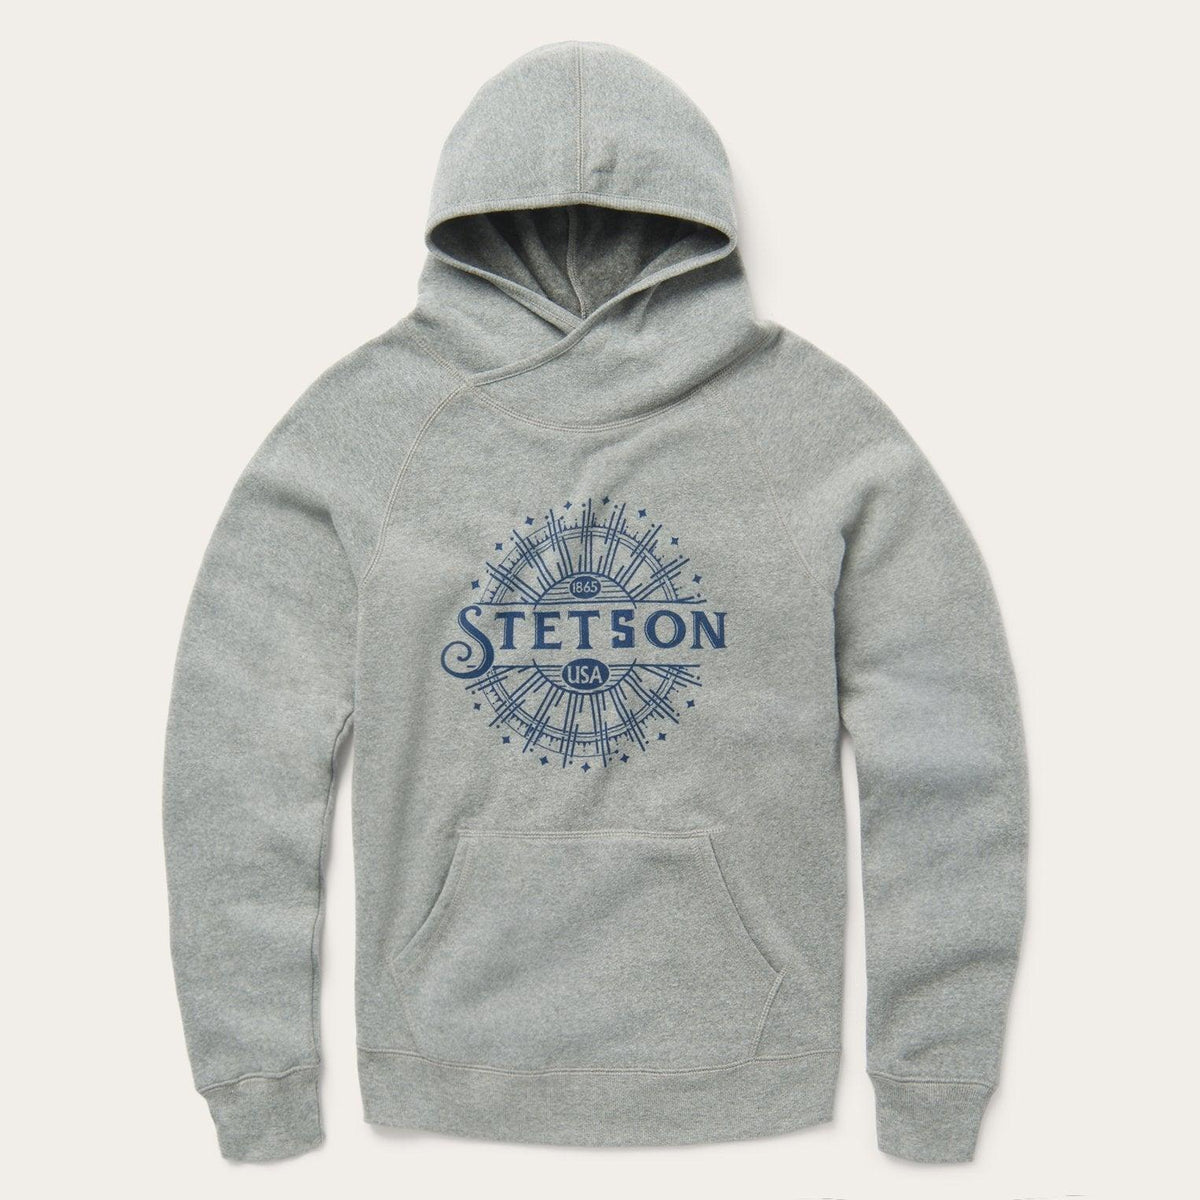 Stetson Gray Heather Hooded Sweatshirt - Flyclothing LLC